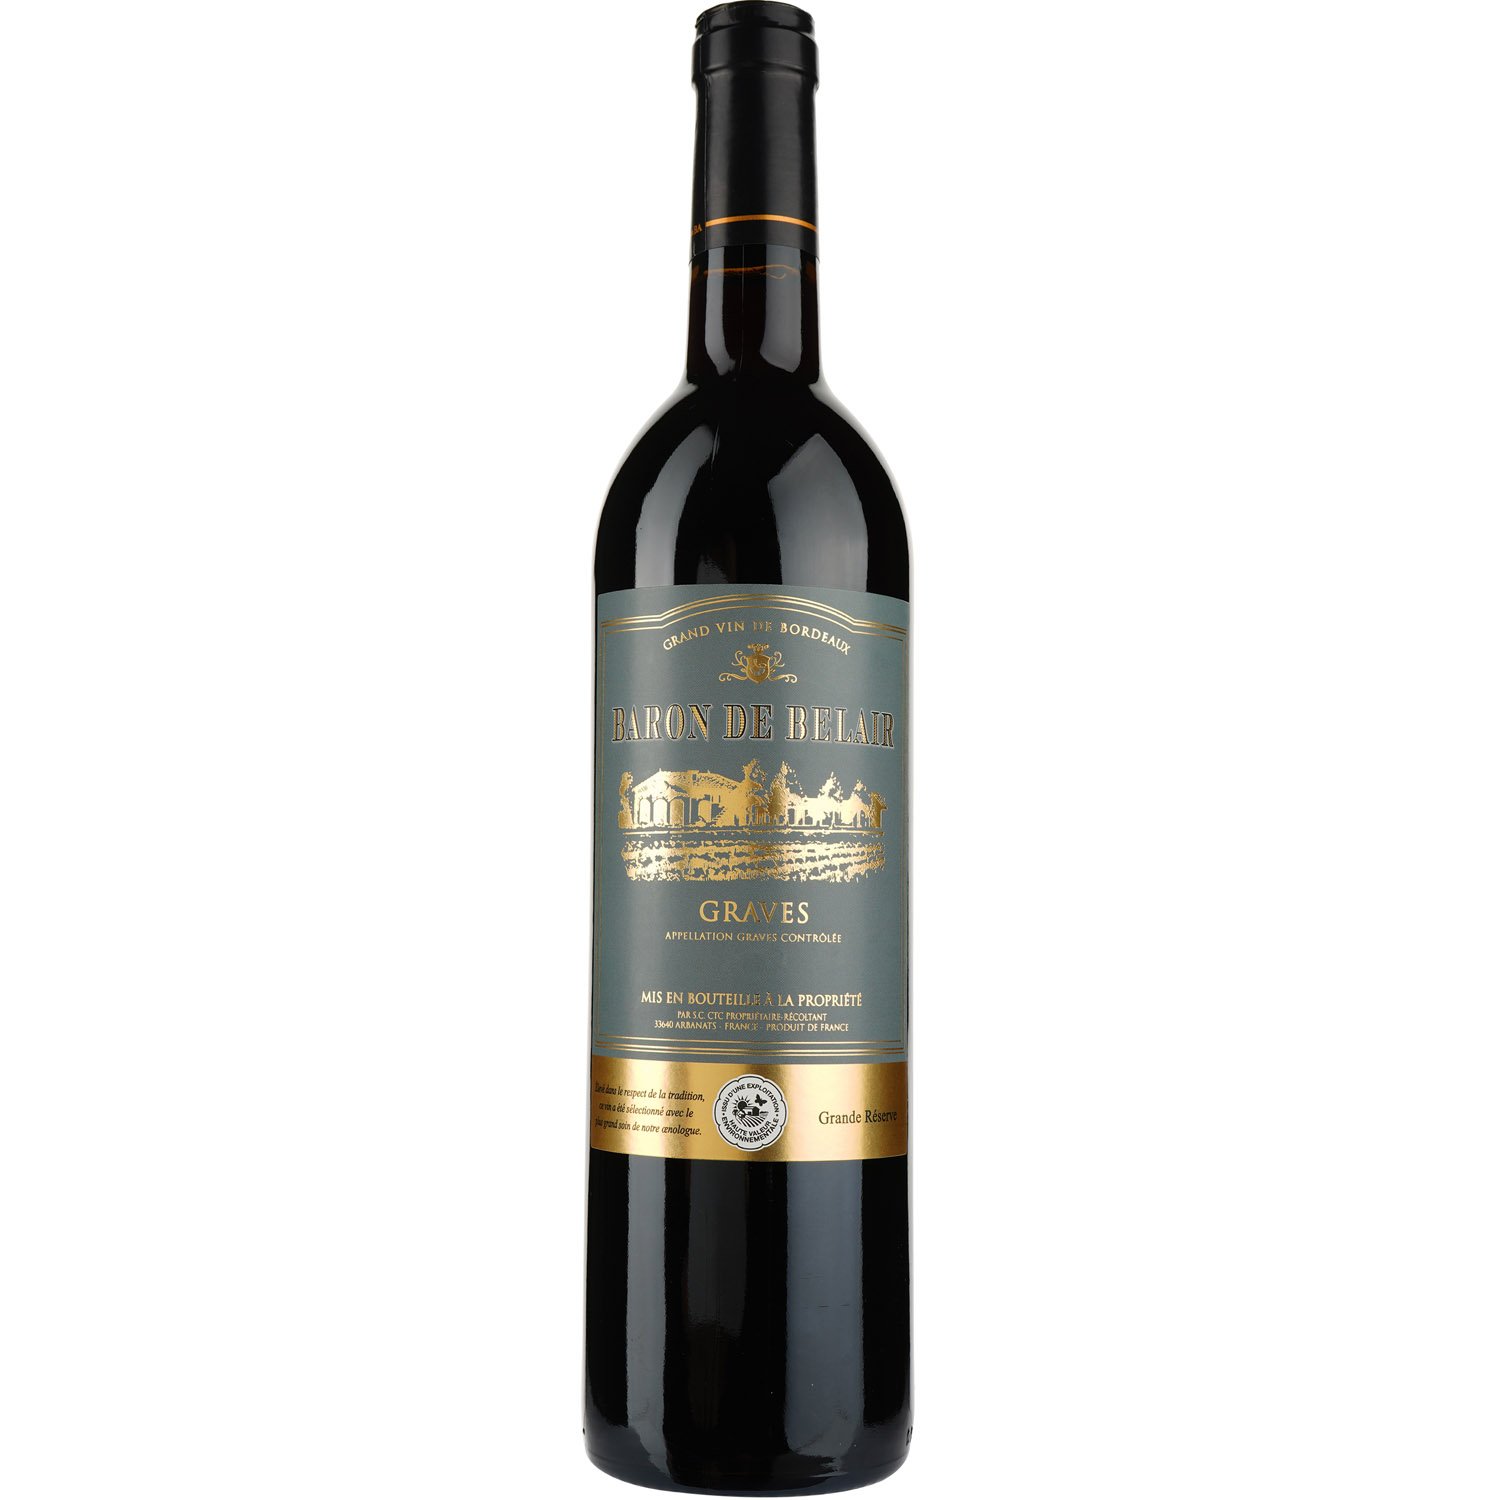 Вино Baron de Belair AOP Graves 2015 красное сухое 0.75 л - фото 1